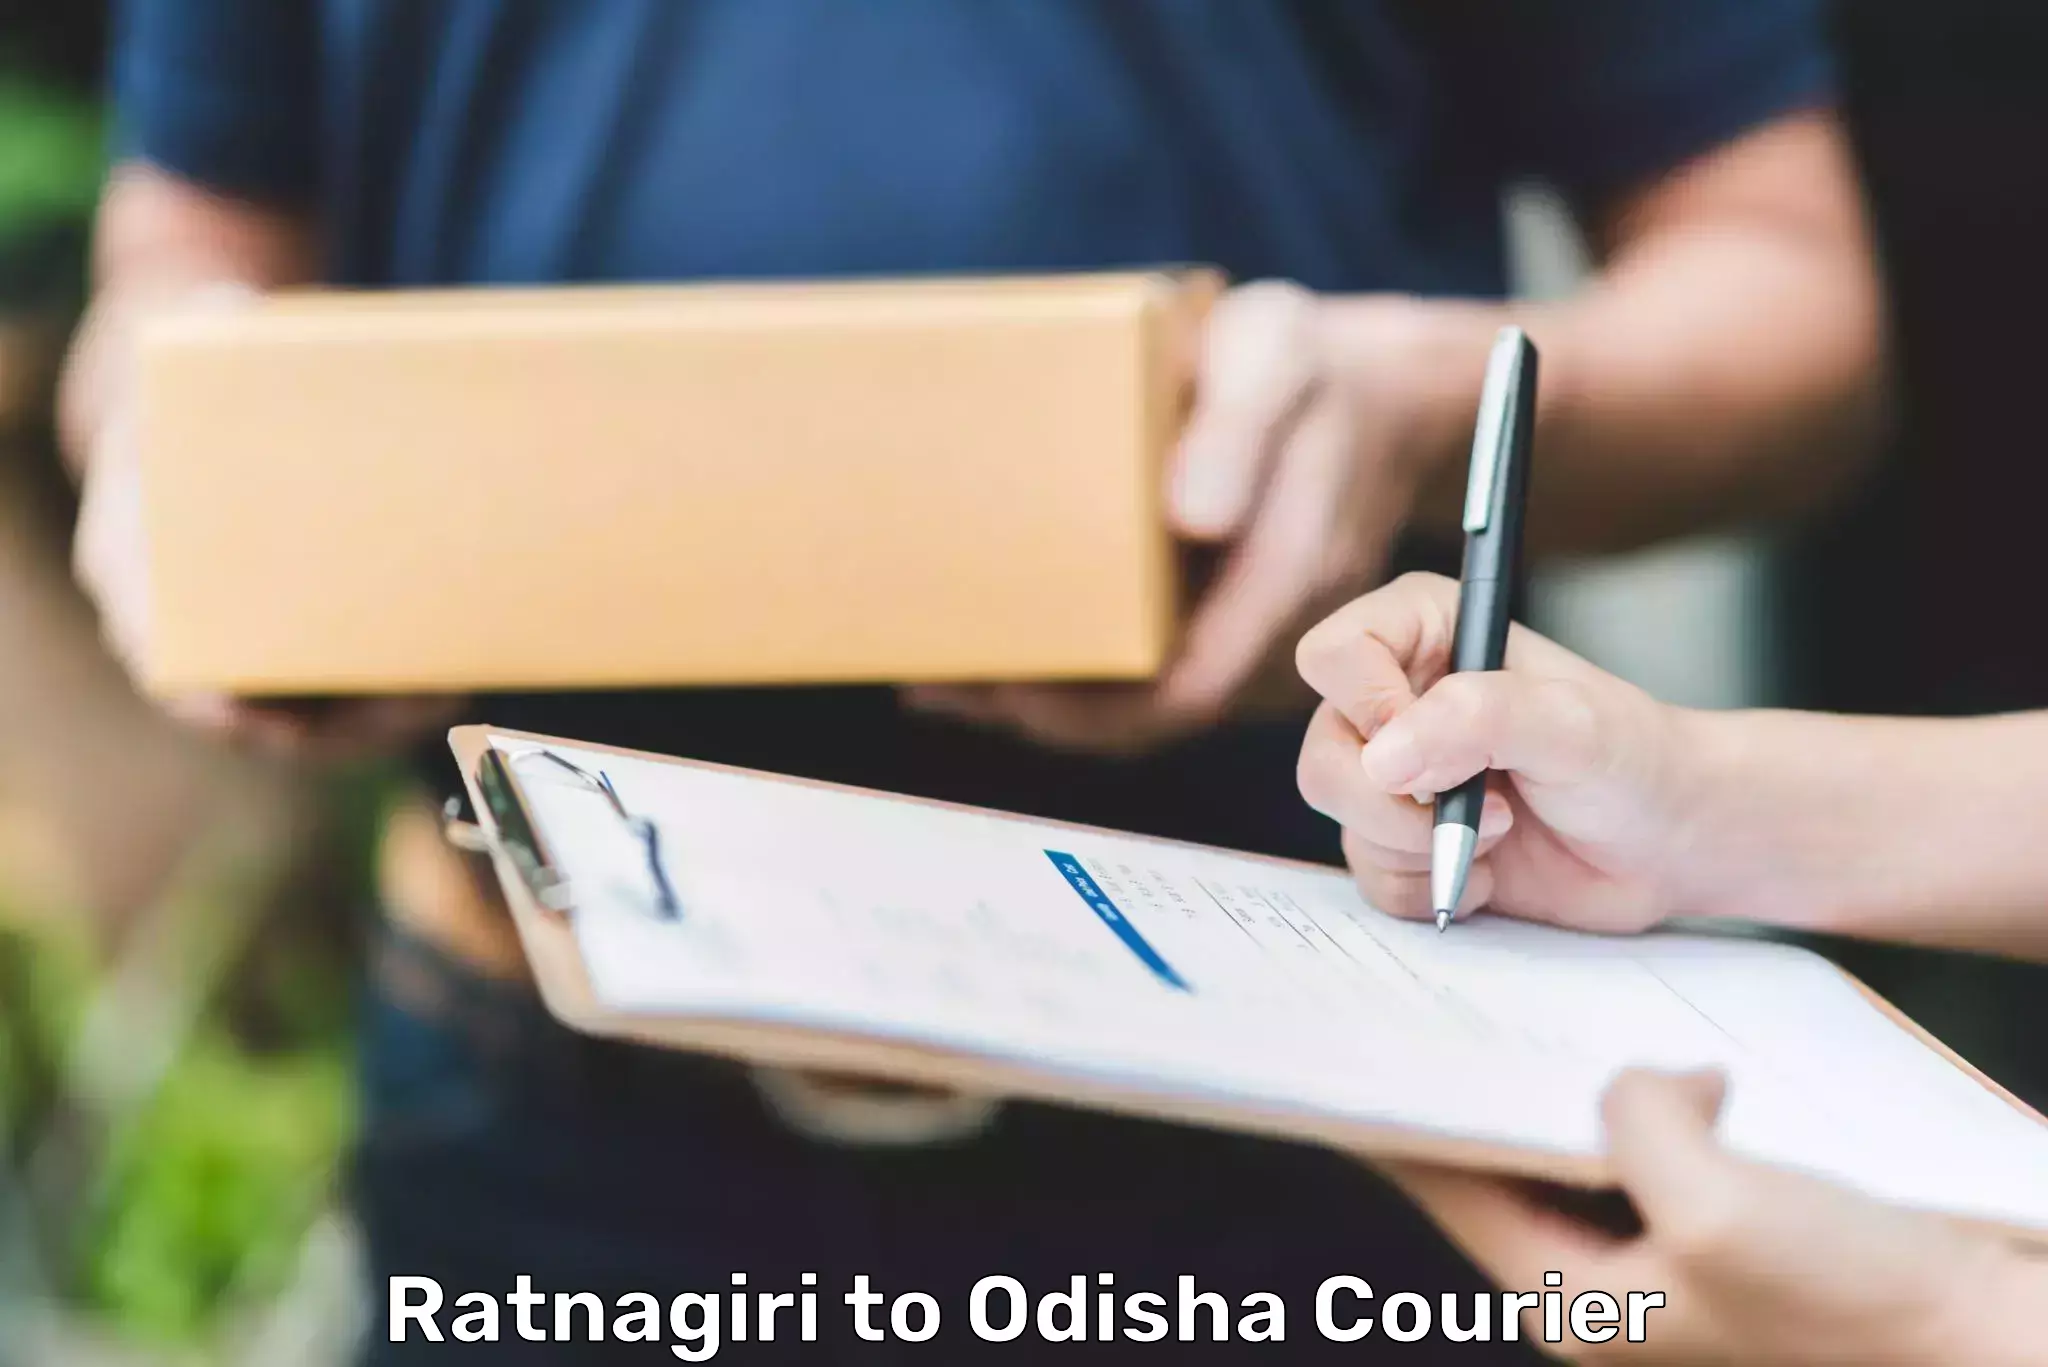 Cash on delivery service Ratnagiri to Melchhamunda